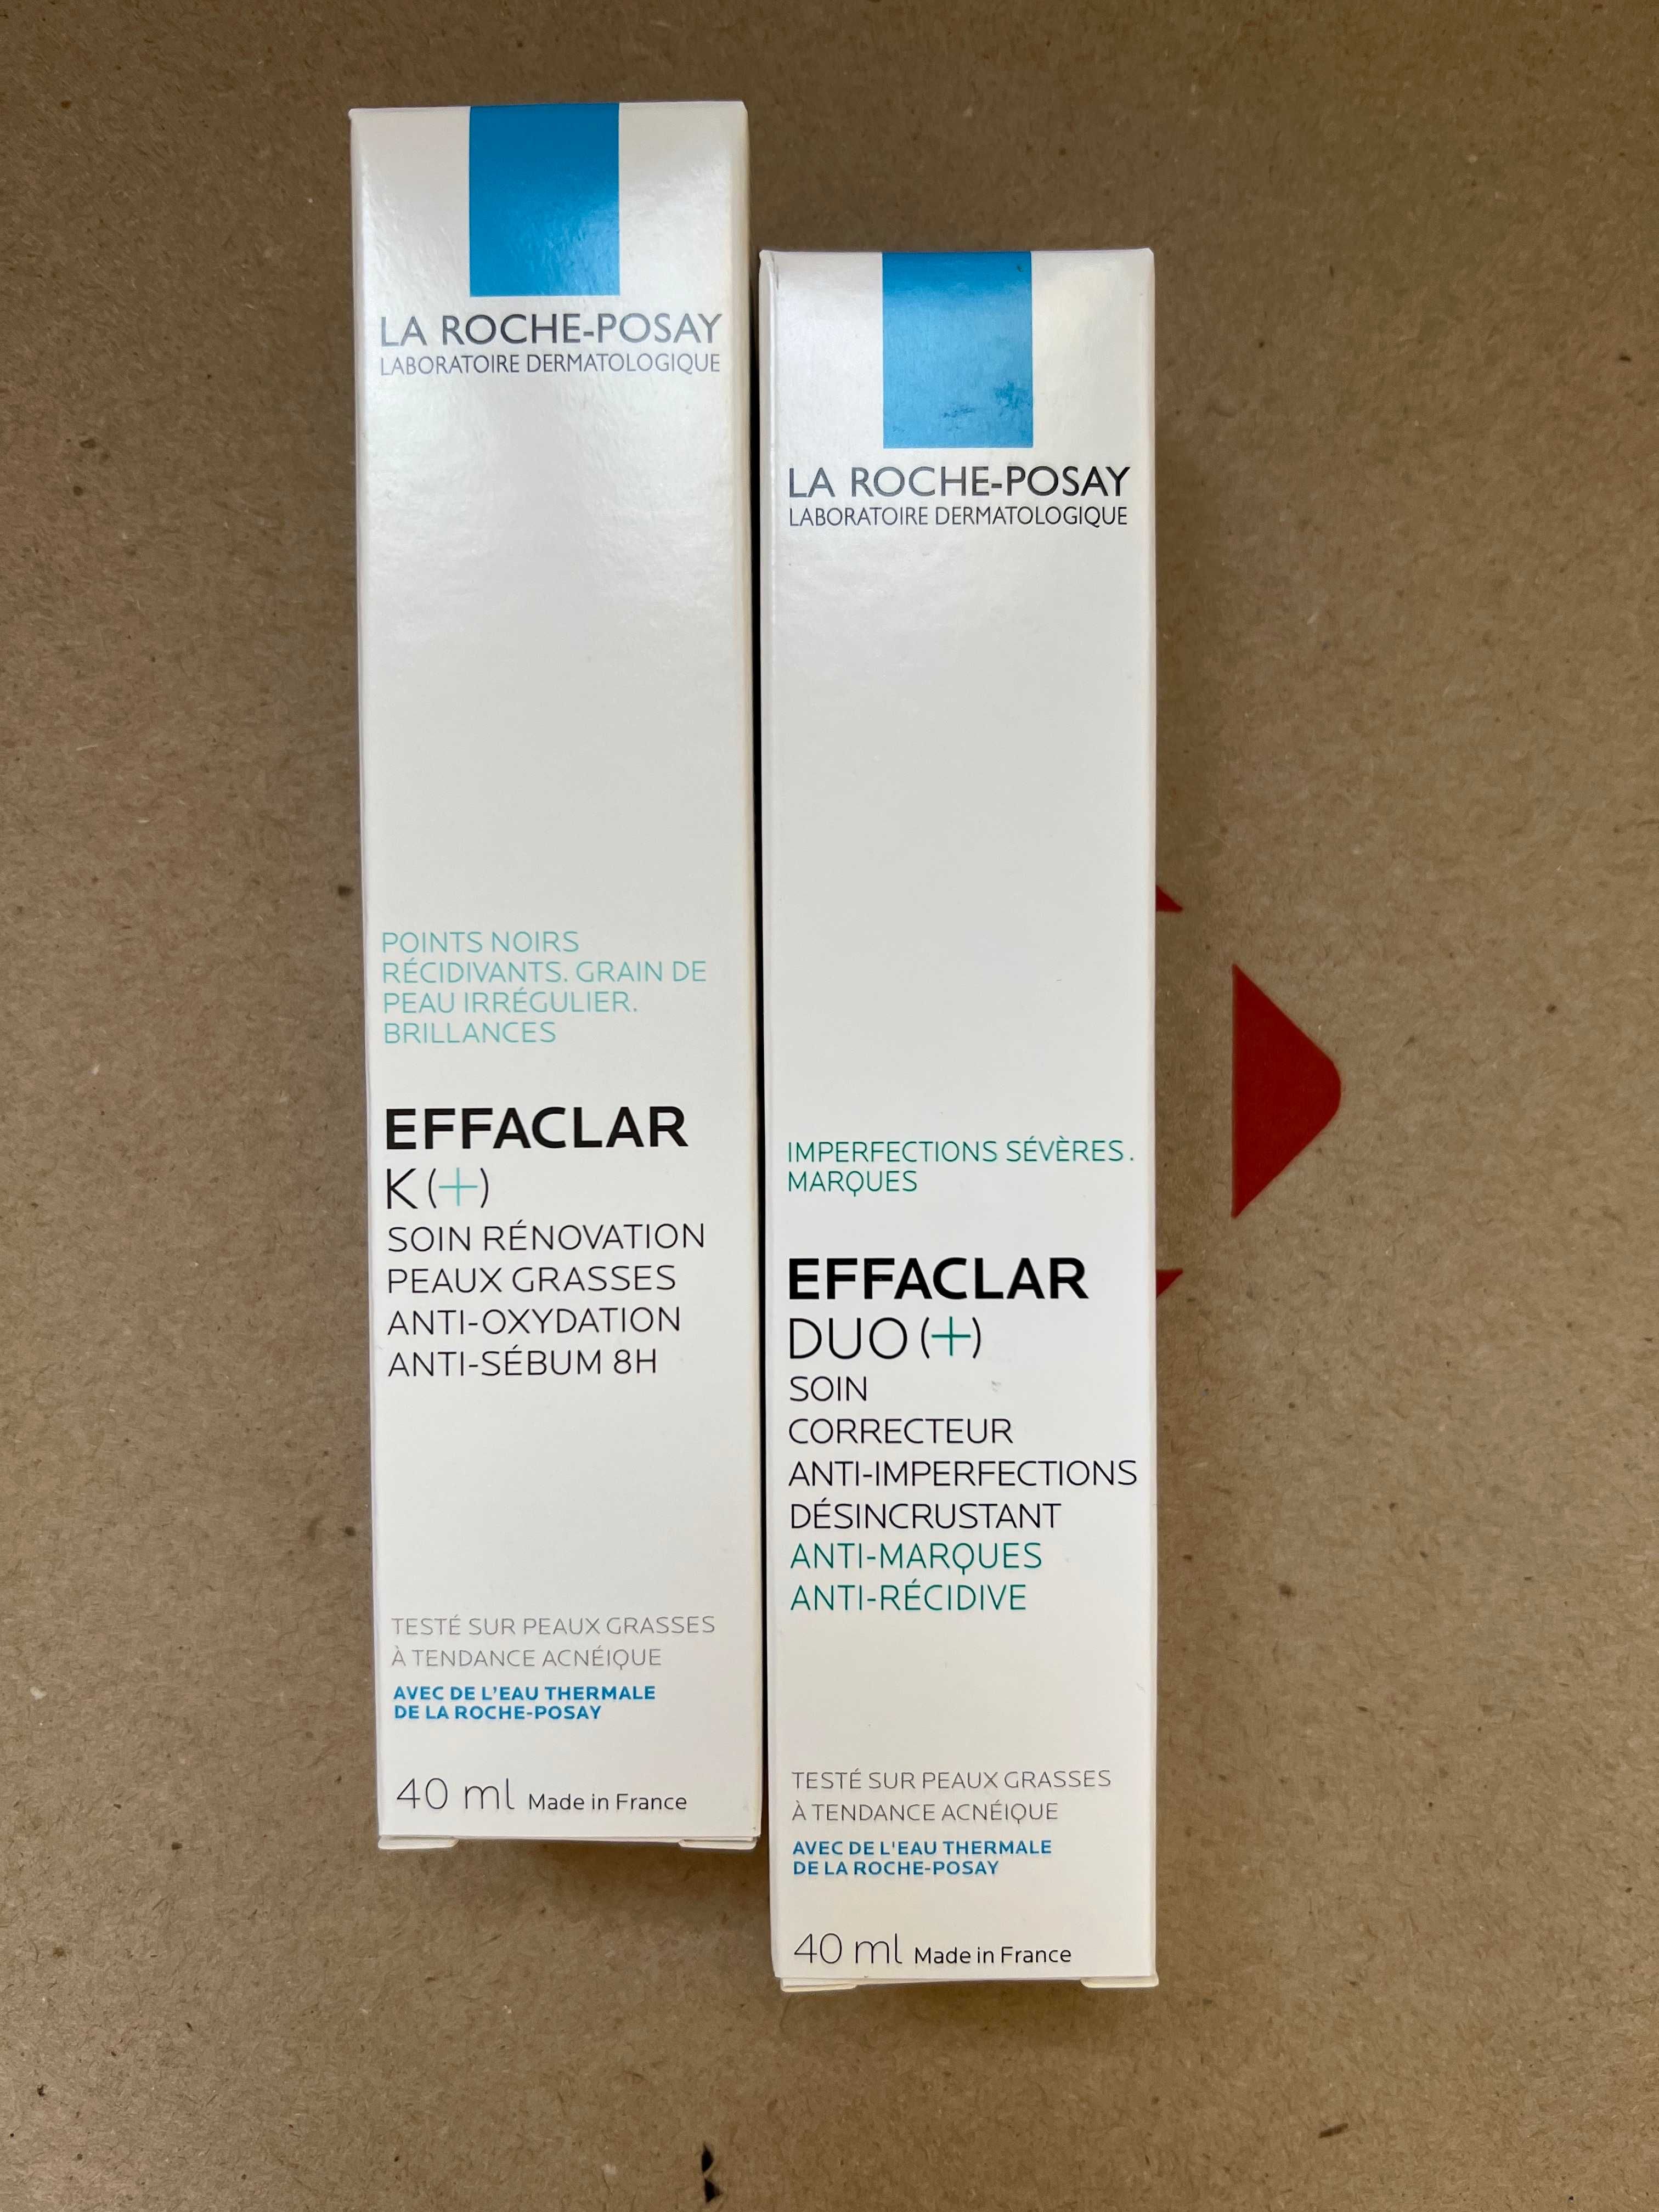 La Roche-Posay Effaclar Duo(+) / Effaclar K(+) 40 ml засоб для догляду